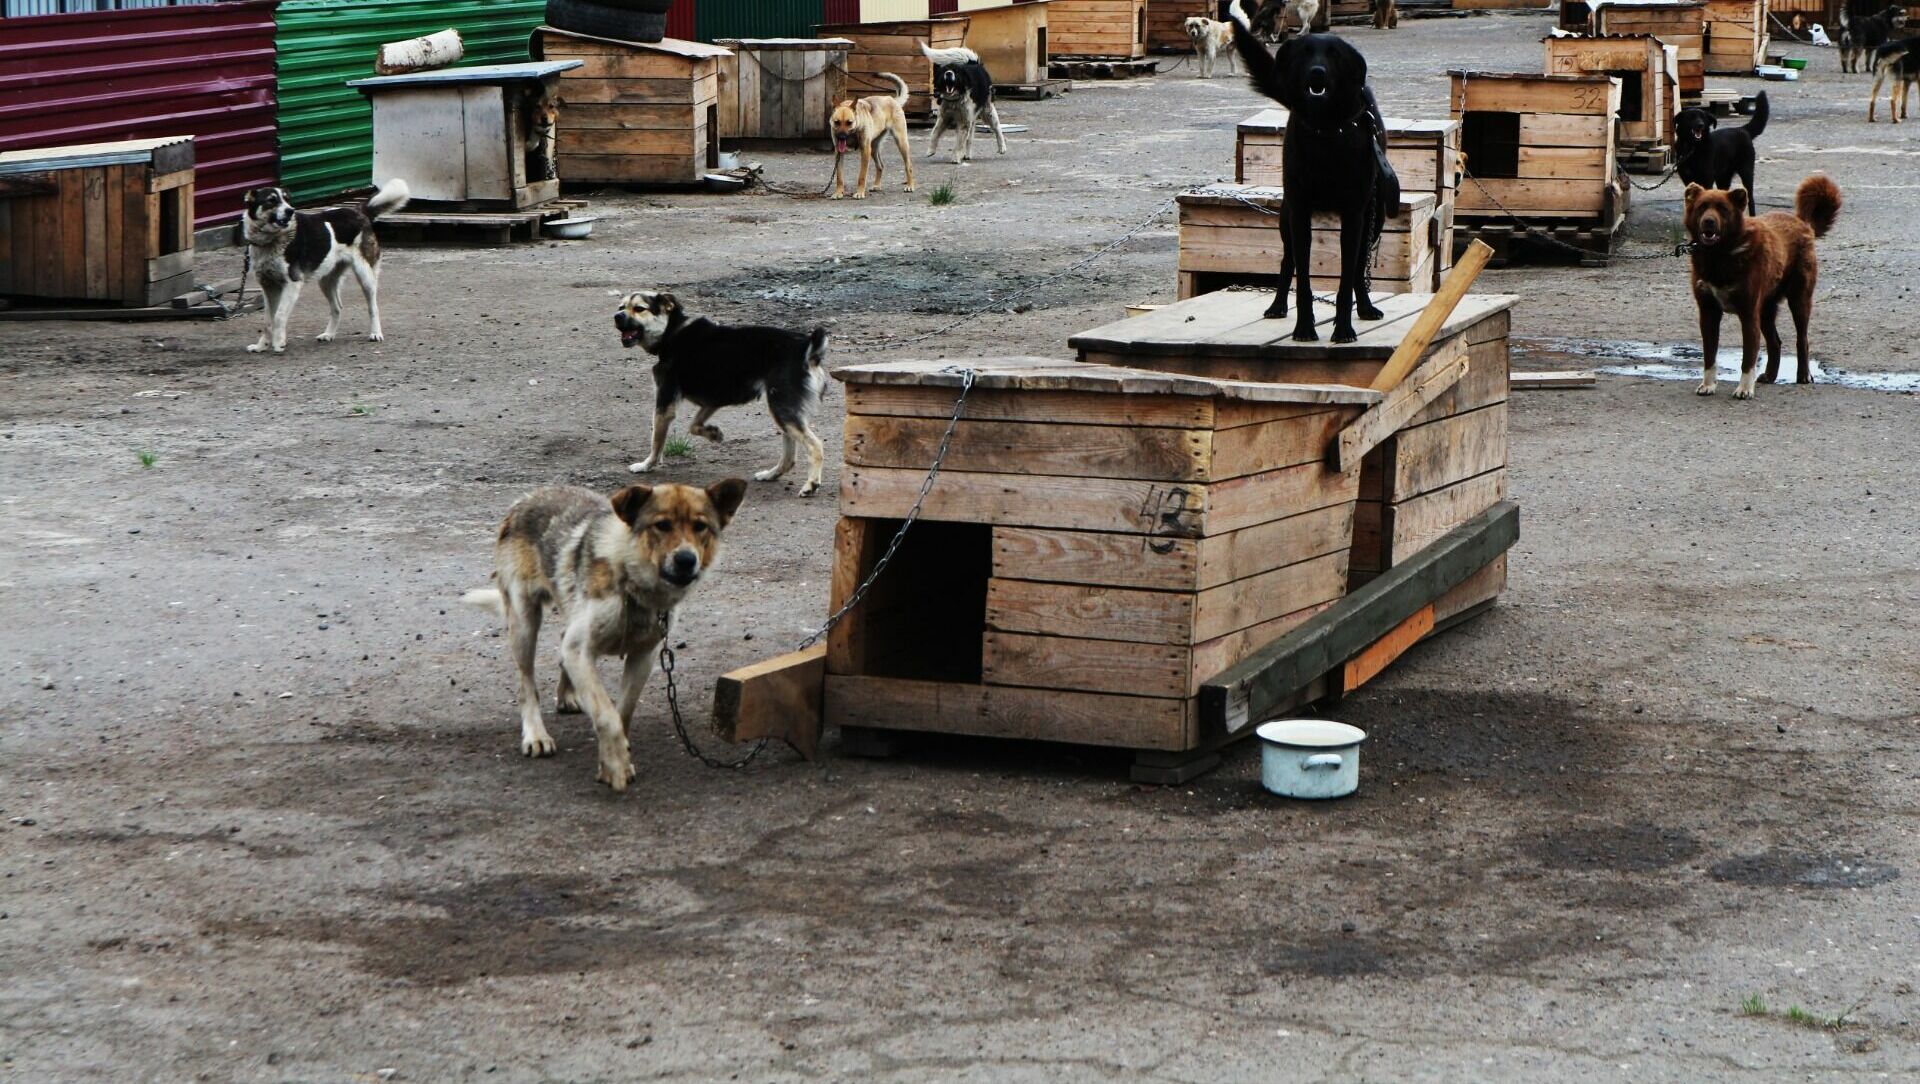  В ХМАО нет ни одного муниципального приюта, где бы соблюдались условия содержания животных.